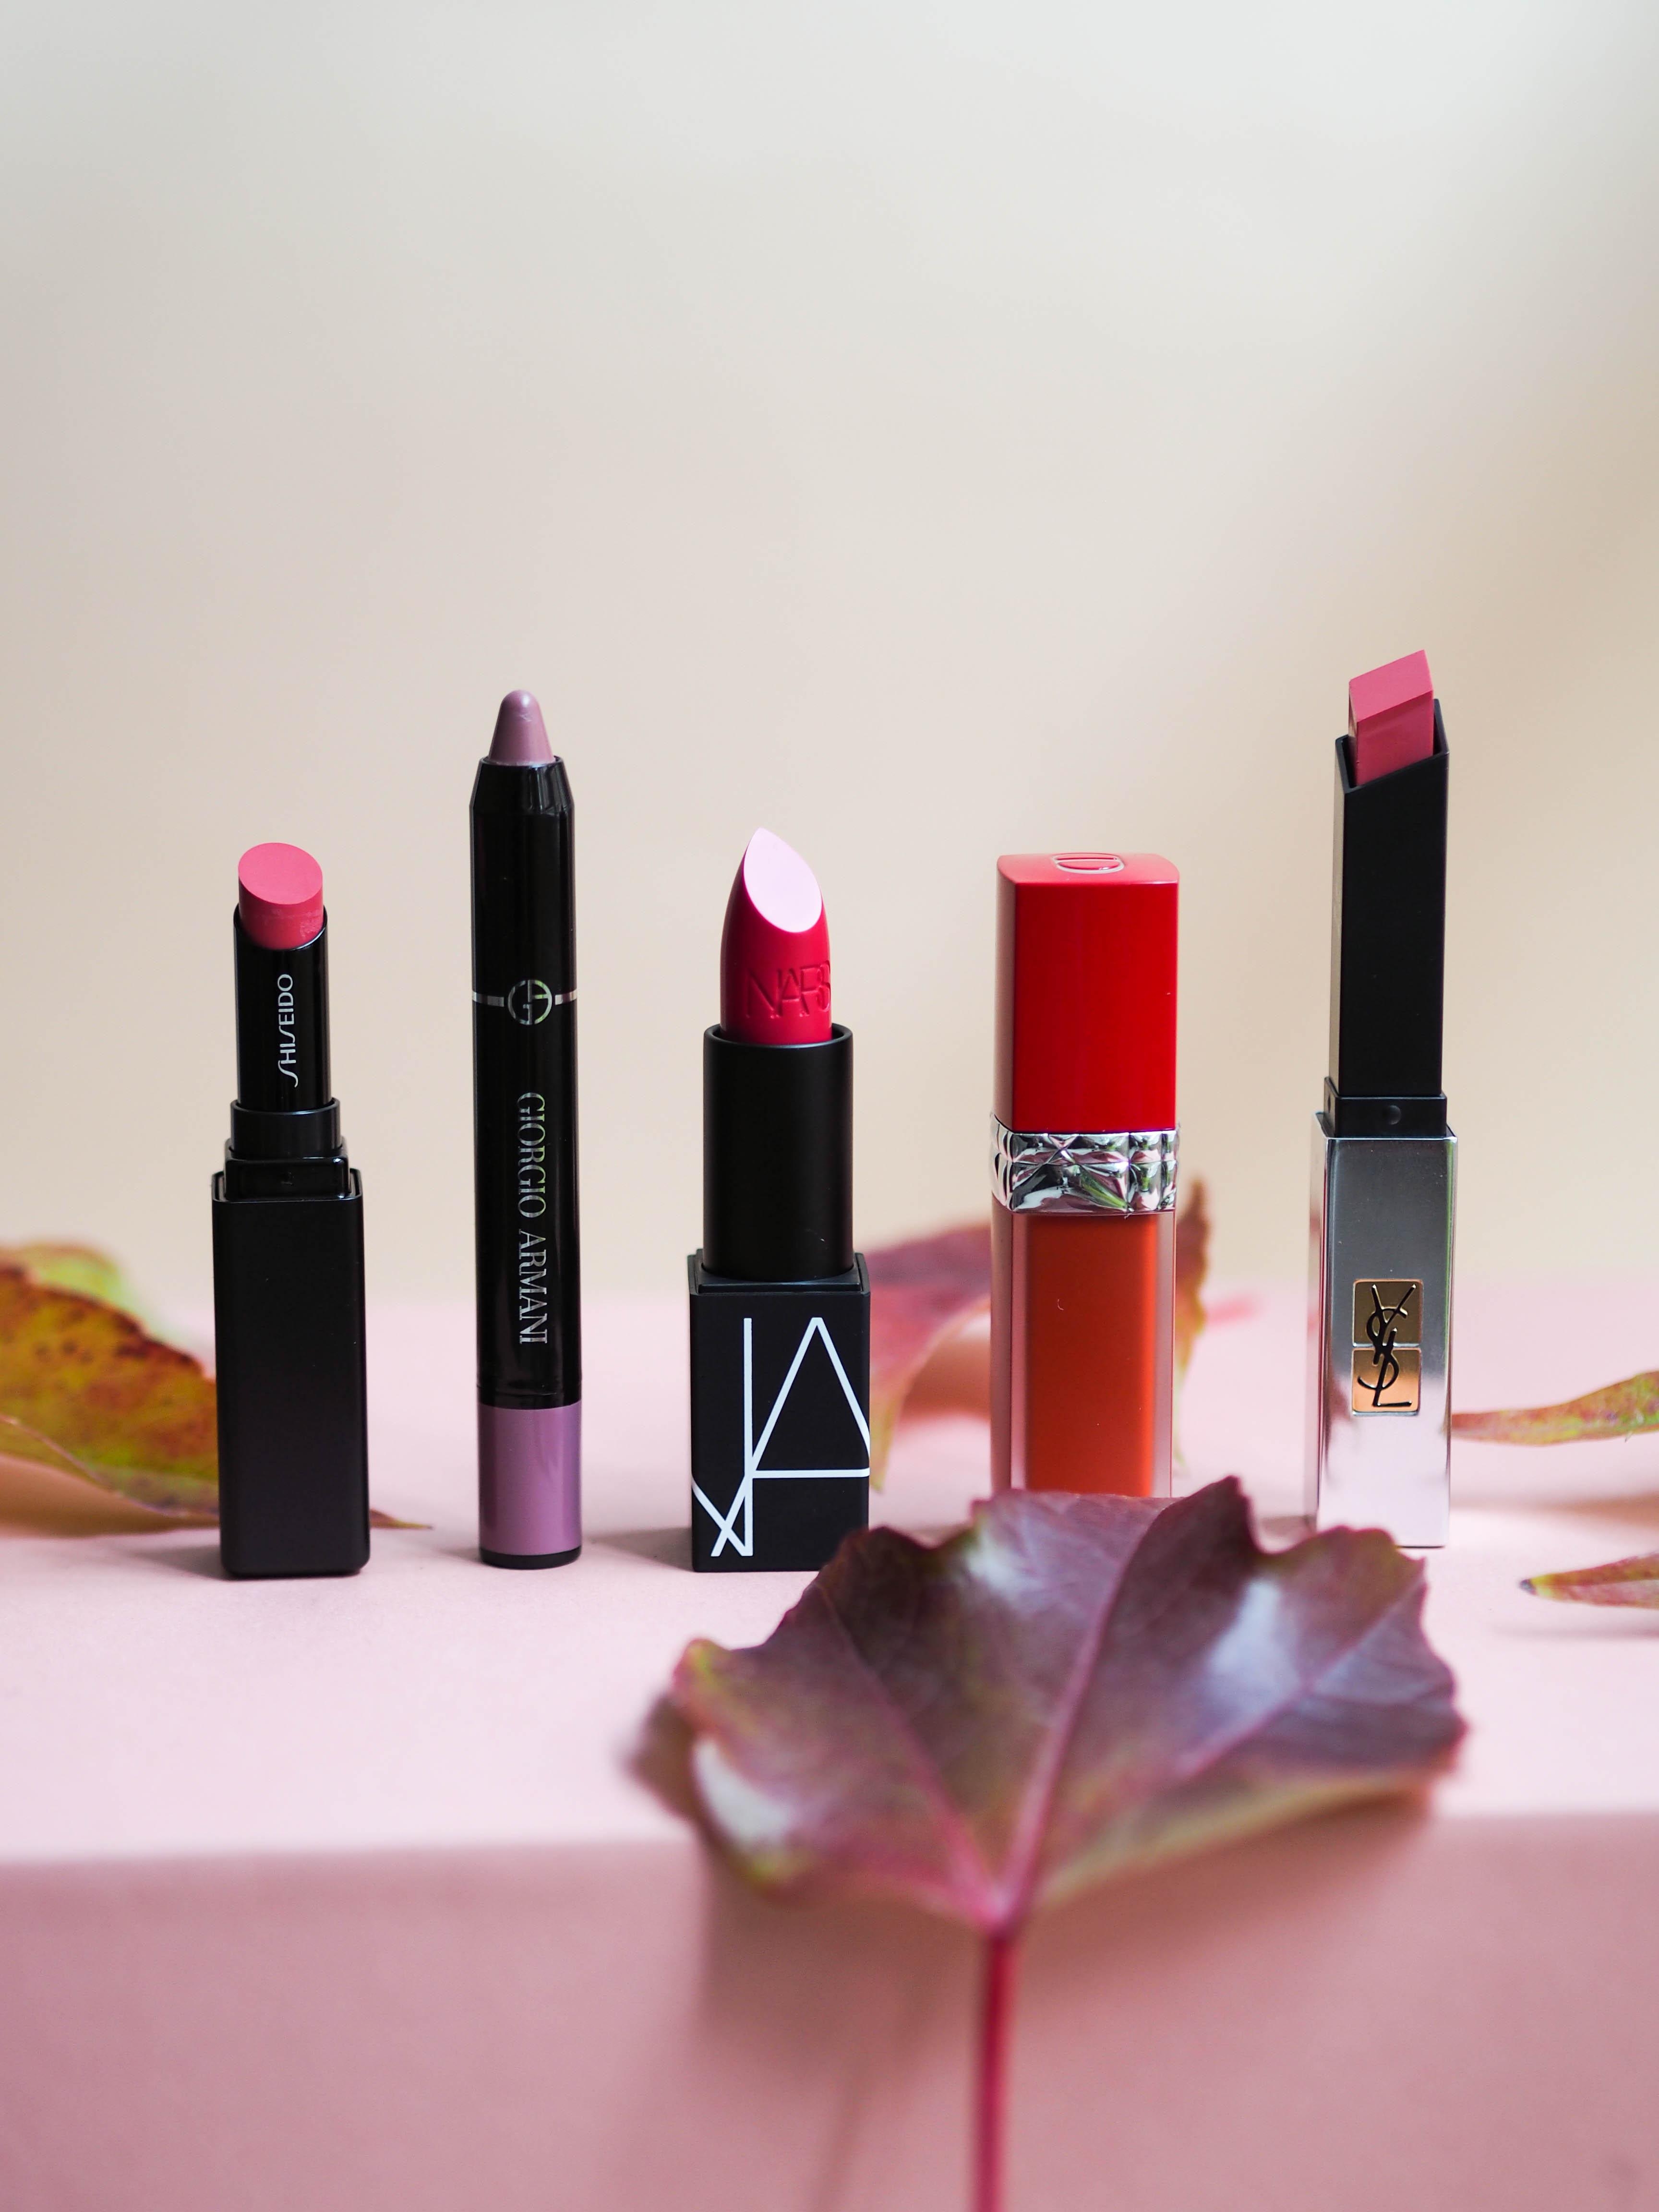 Hallo Herbst! Hier kommen unsere Lieblings-Lipsticks für die goldene Jahreszeit 💋 #beautylieblinge #lippenstift